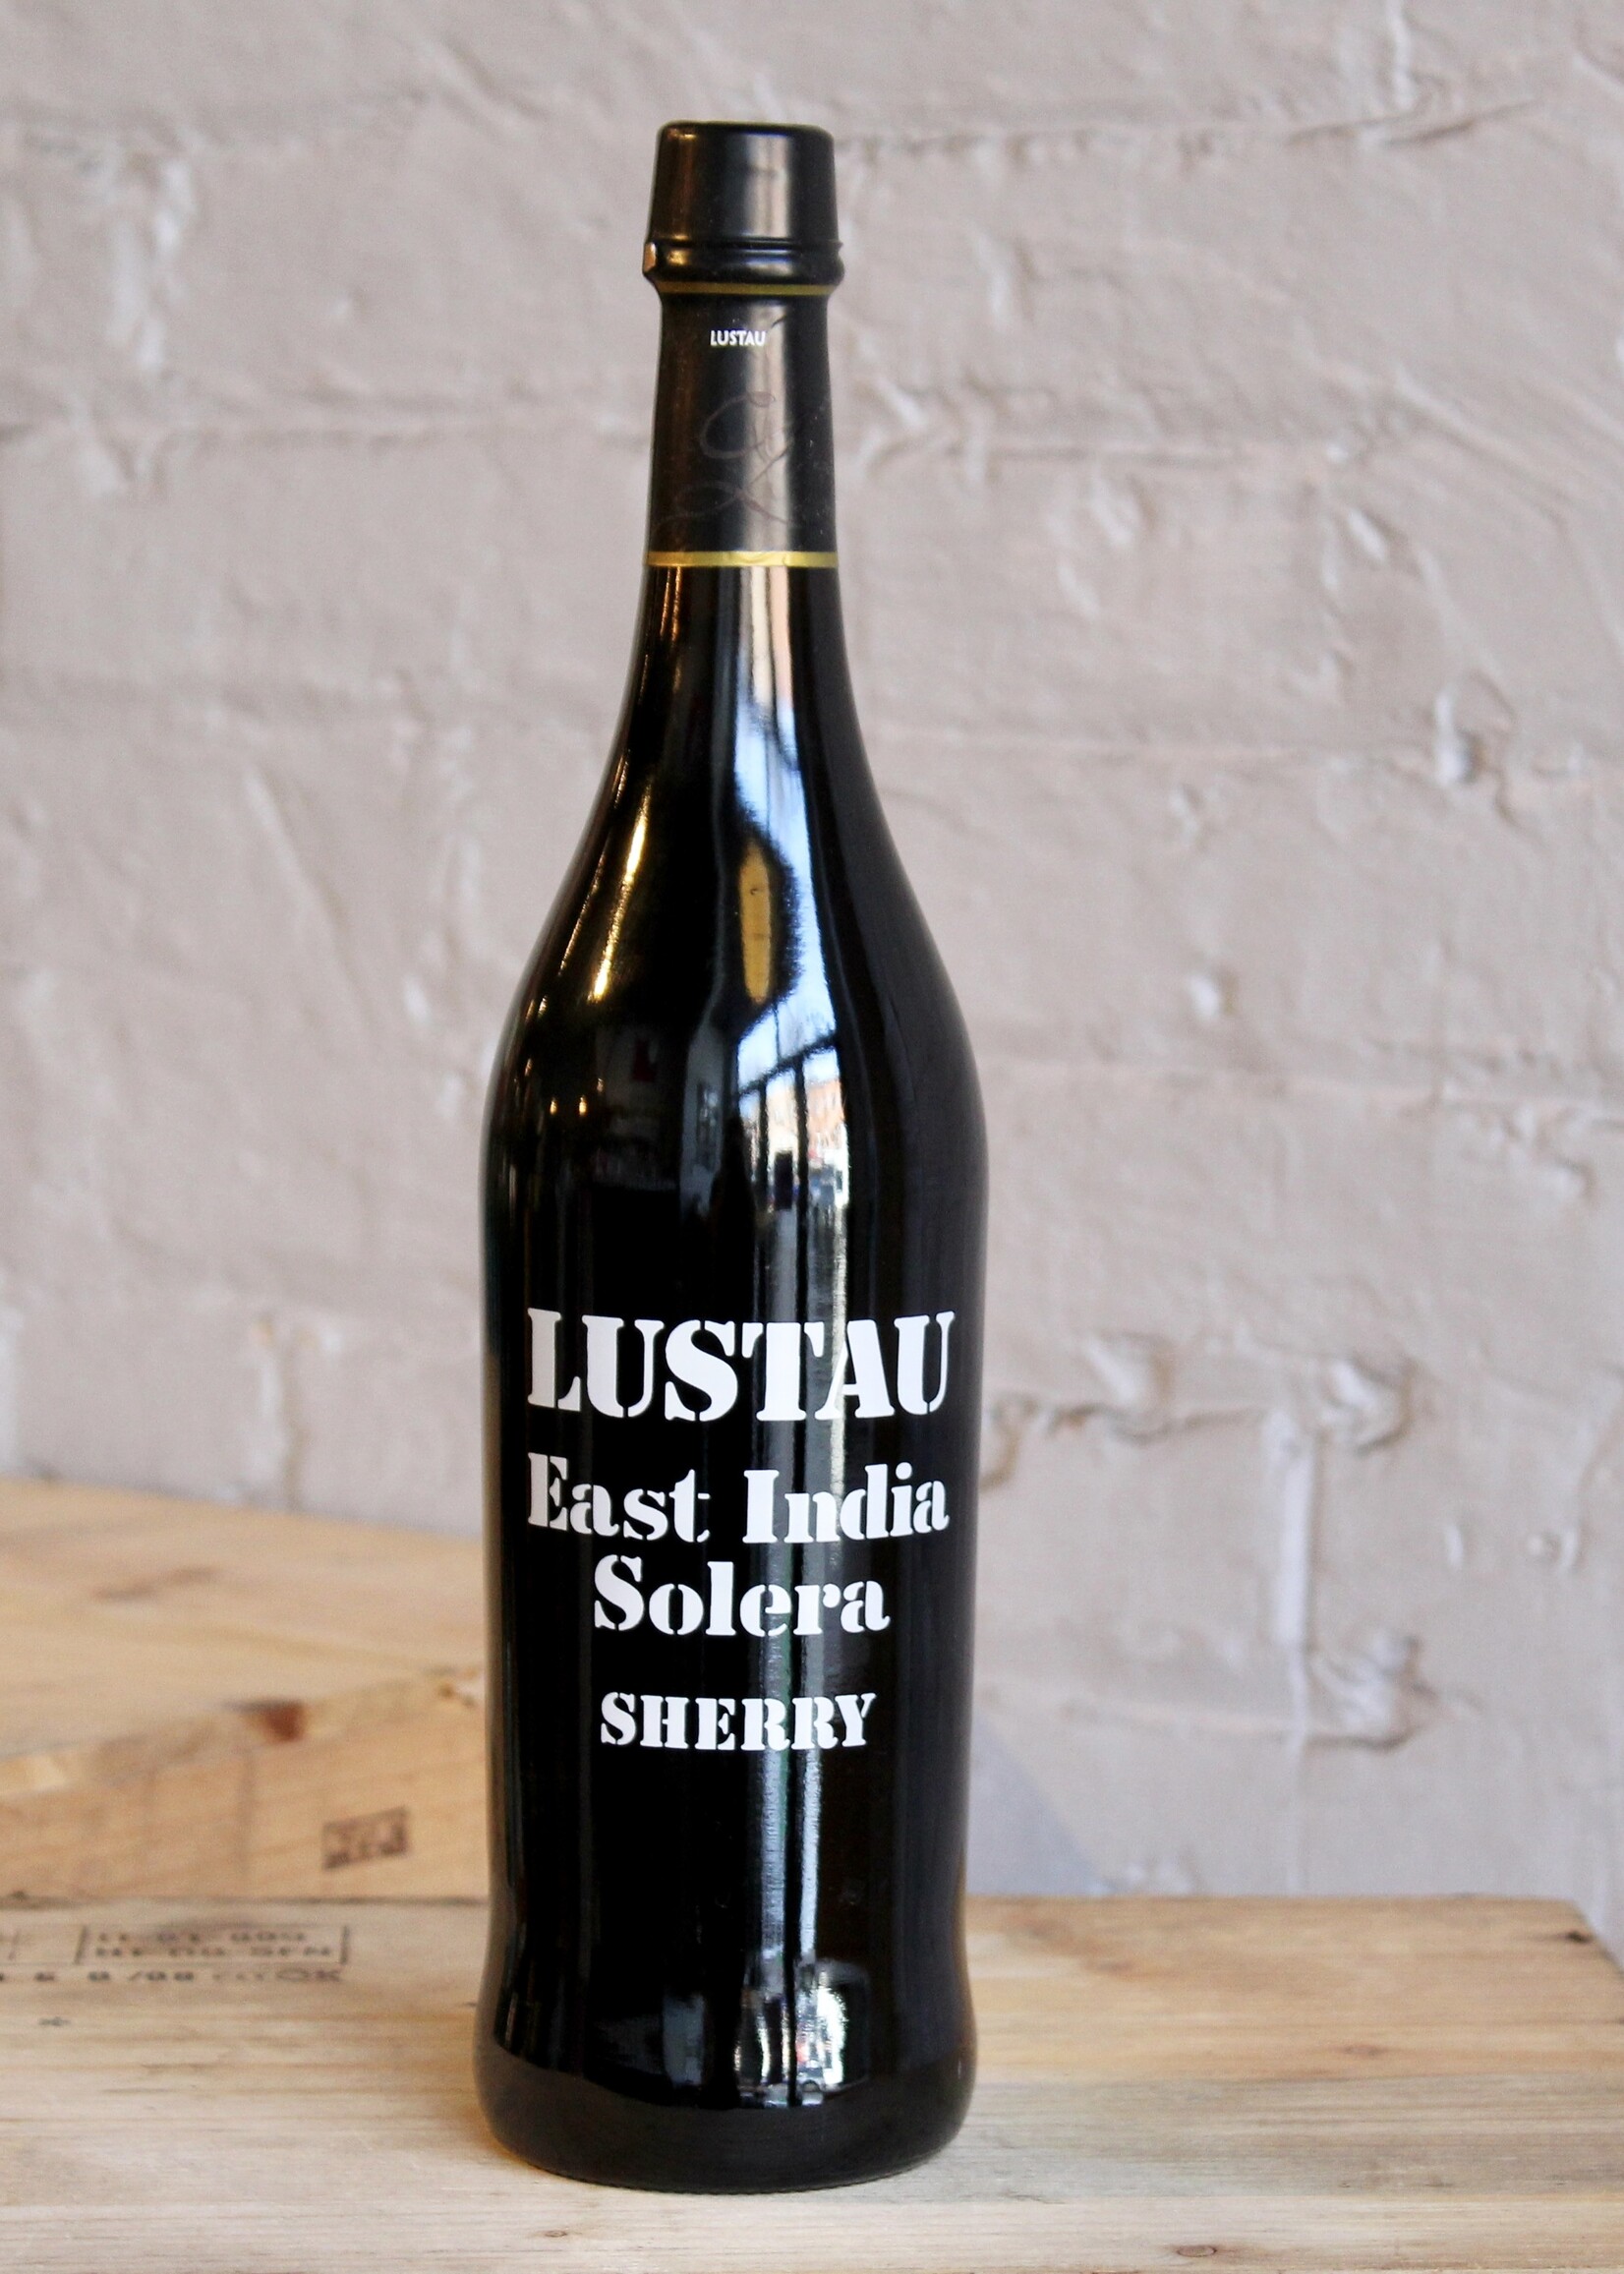 Wine NV Lustau East India Solera Sherry - Jerez, Spain